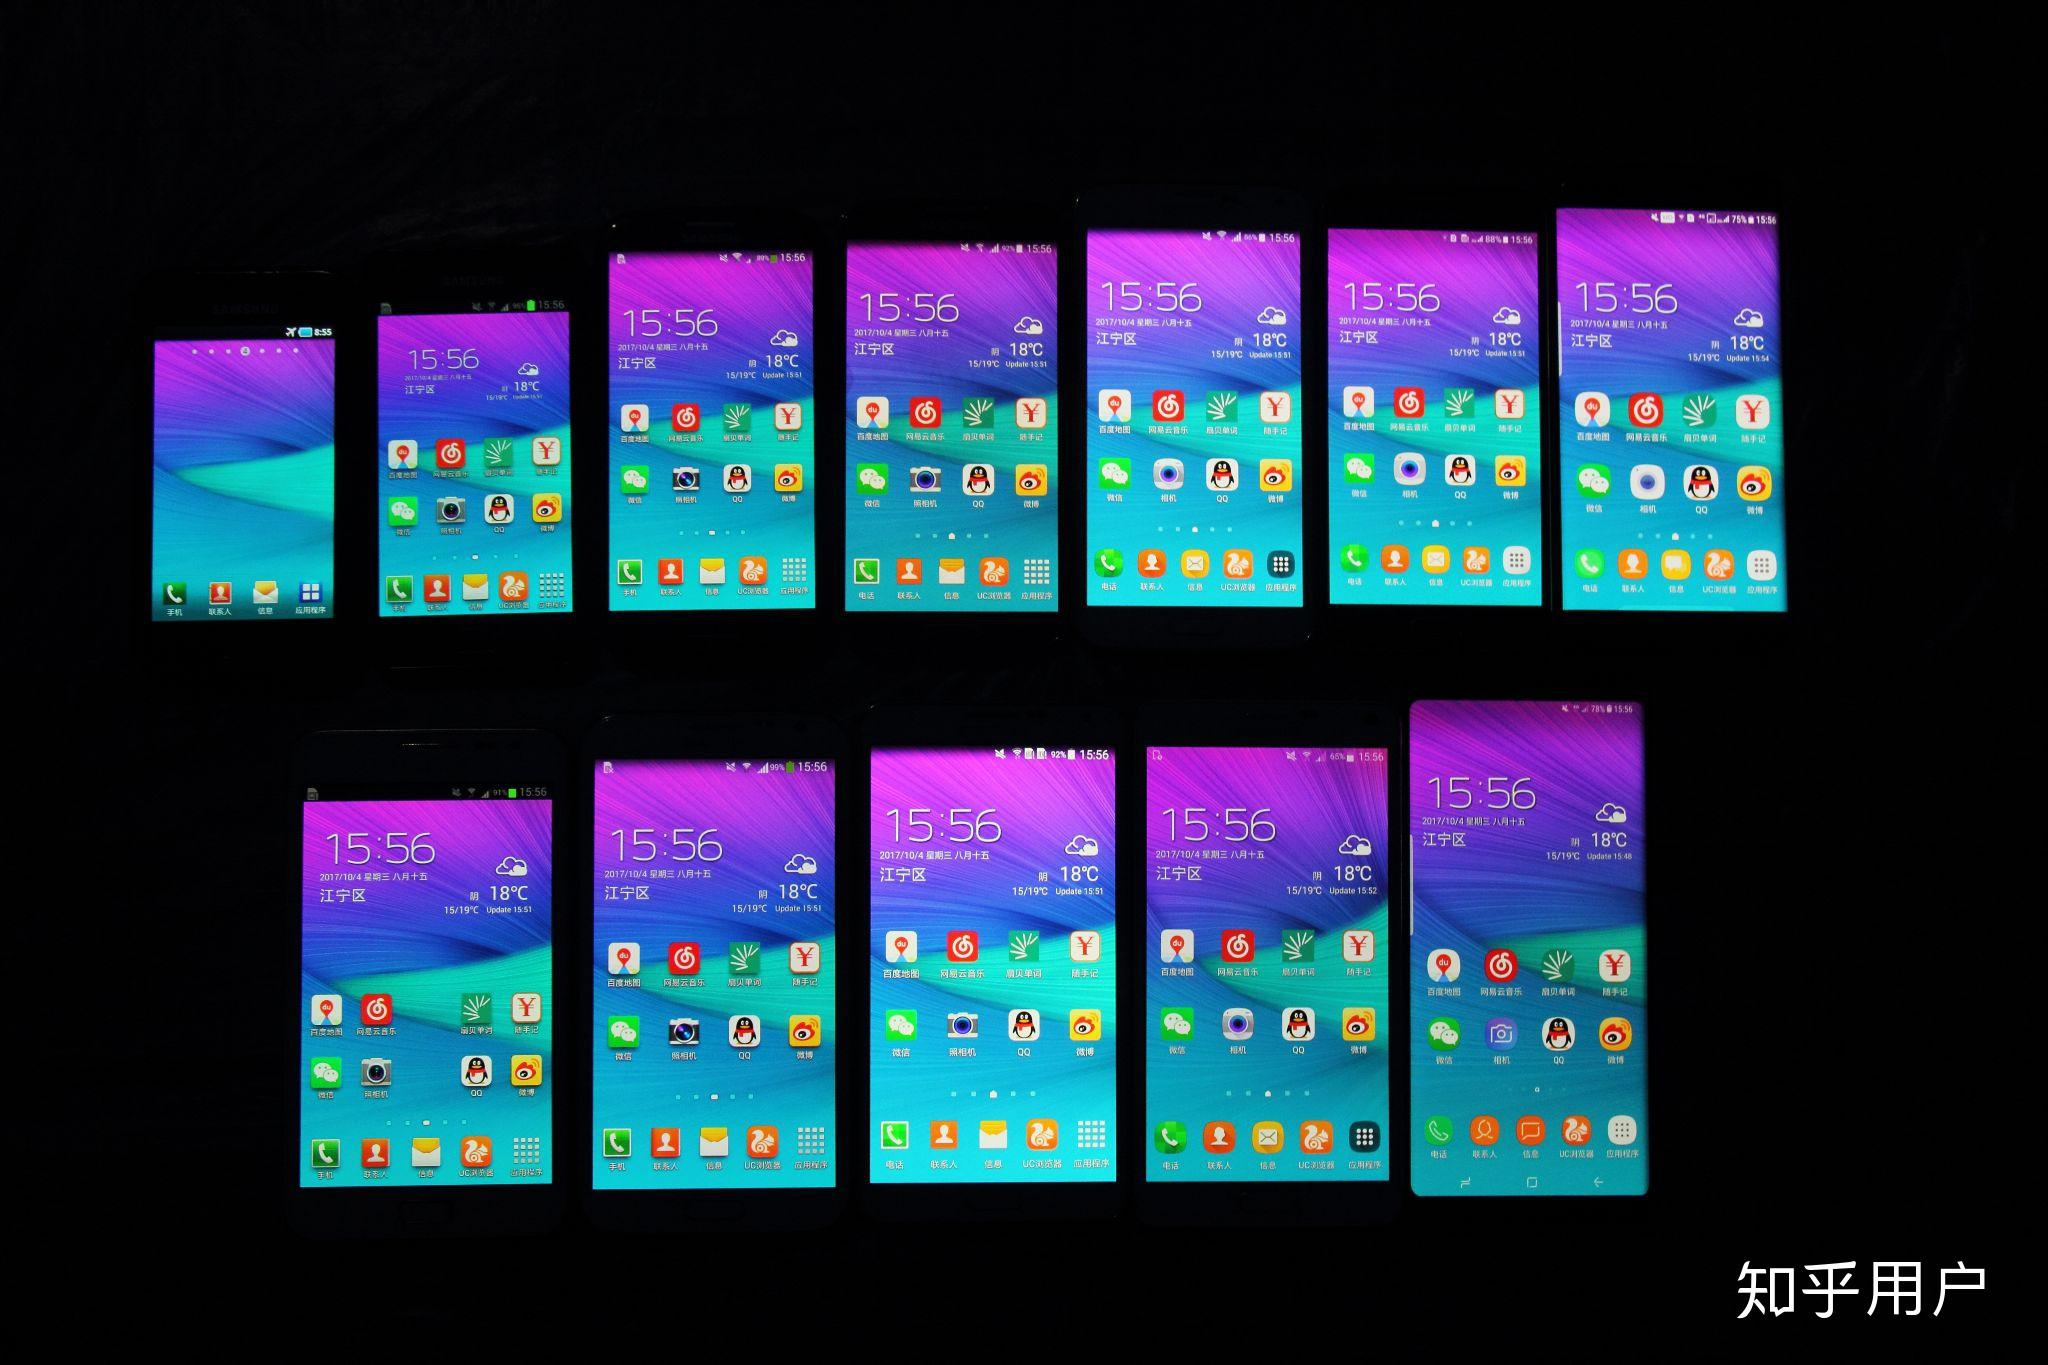 2020 年 2 月 12 日发布的三星 Galaxy Z Flip 折叠屏手机有哪些亮点和不足？ - 知乎